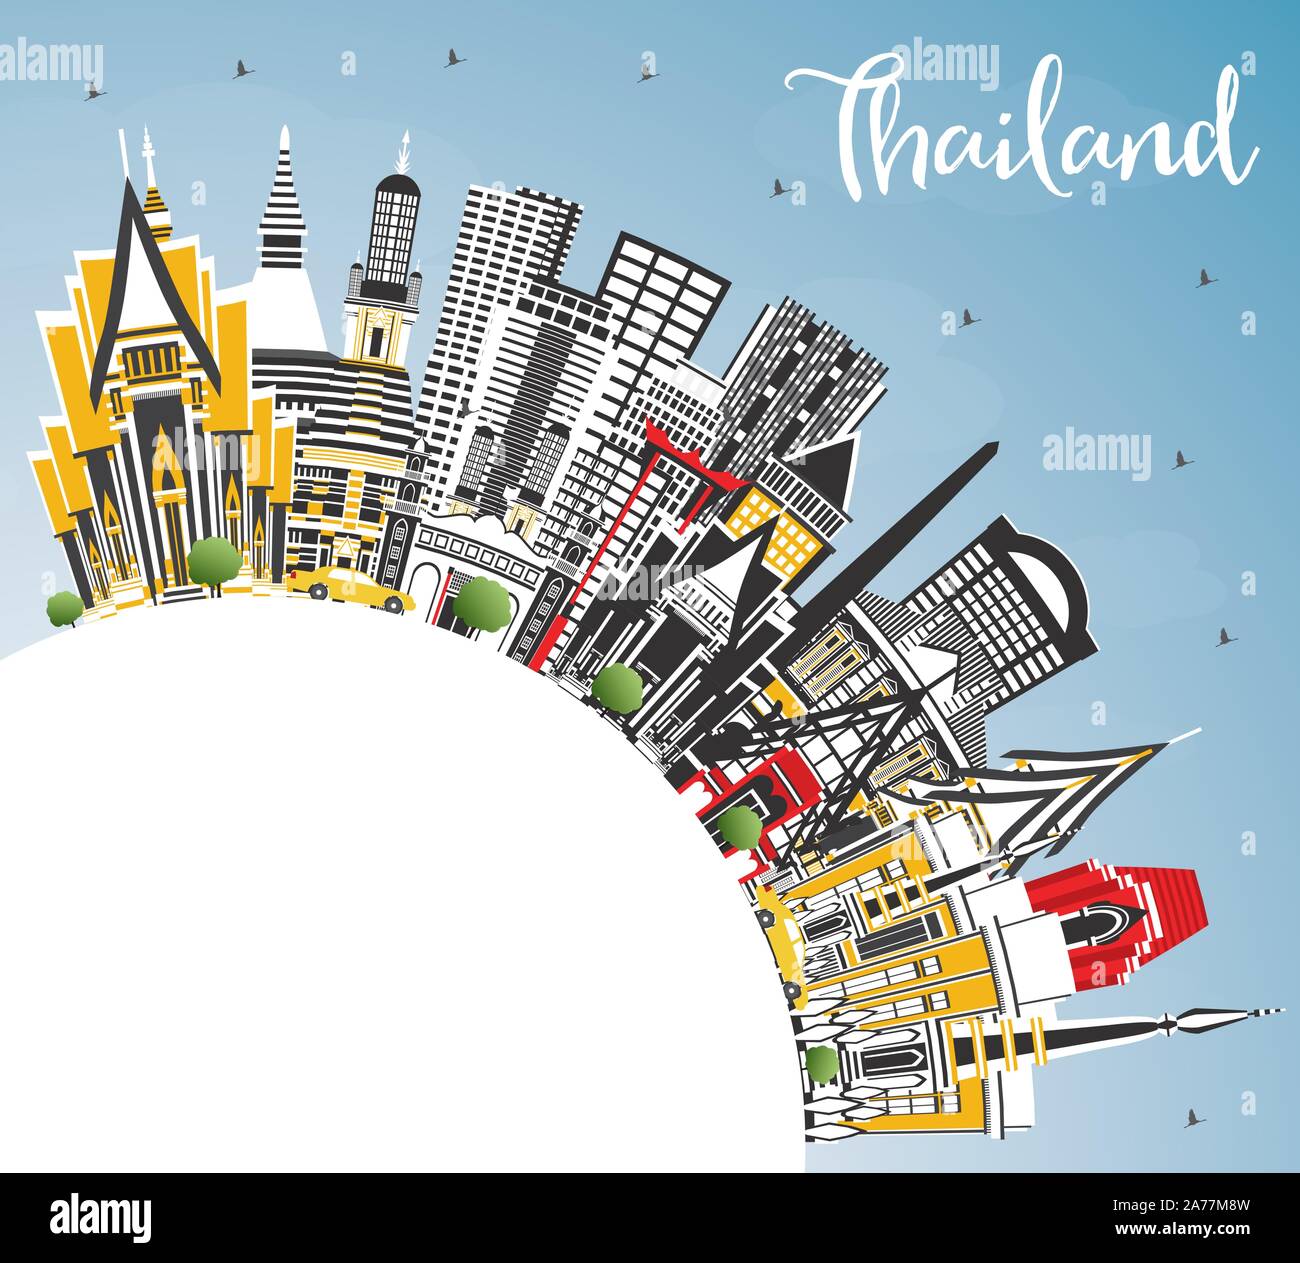 La Thaïlande avec les toits de la ville, bâtiments de couleur bleu ciel et l'espace de copie. Vector Illustration. Concept du tourisme avec l'architecture historique. Illustration de Vecteur